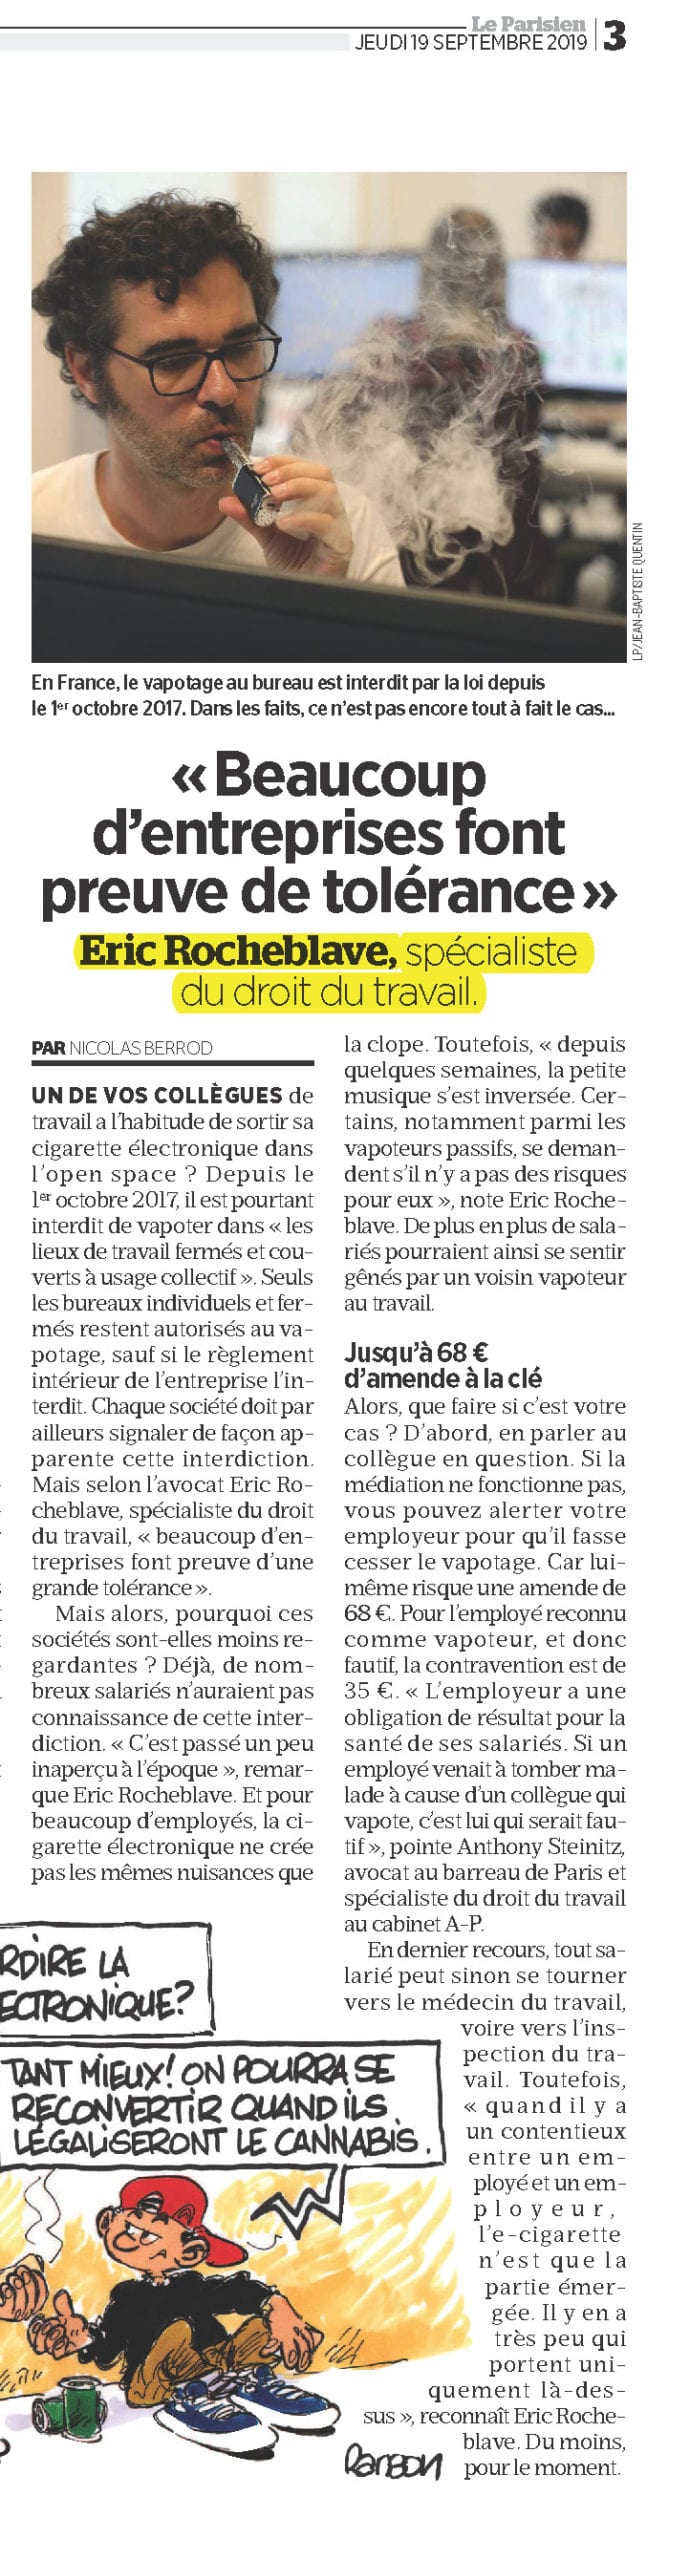 « LE VAPOTAGE SOUS HAUTE SURVEILLANCE » Interview LE PARISIEN de Maître Eric ROCHEBLAVE 